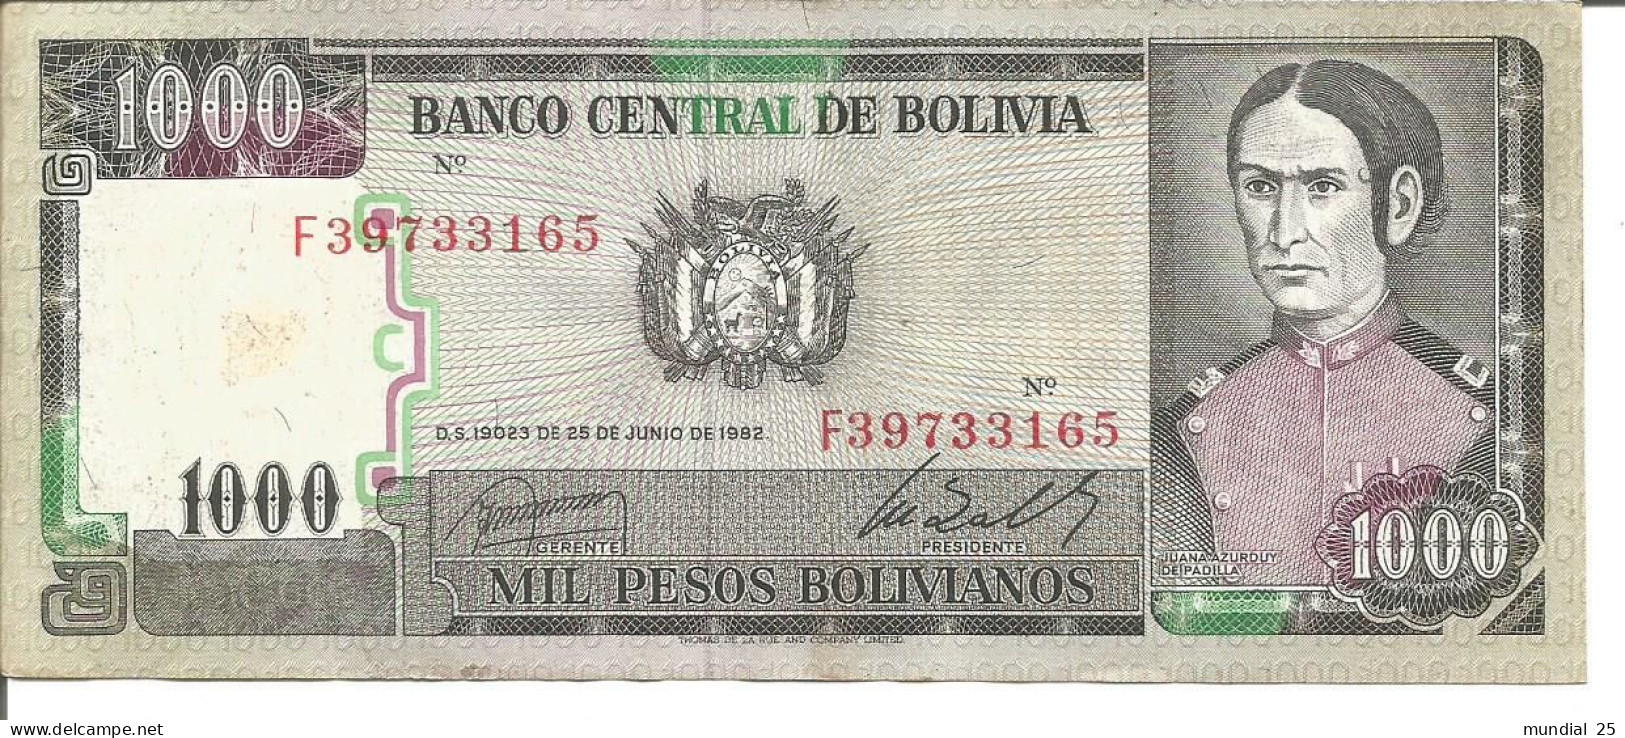 BOLIVIA 1.000 PESOS BOLIVIANOS - D.S 19023 DE 25/06/1962 - Bolivien